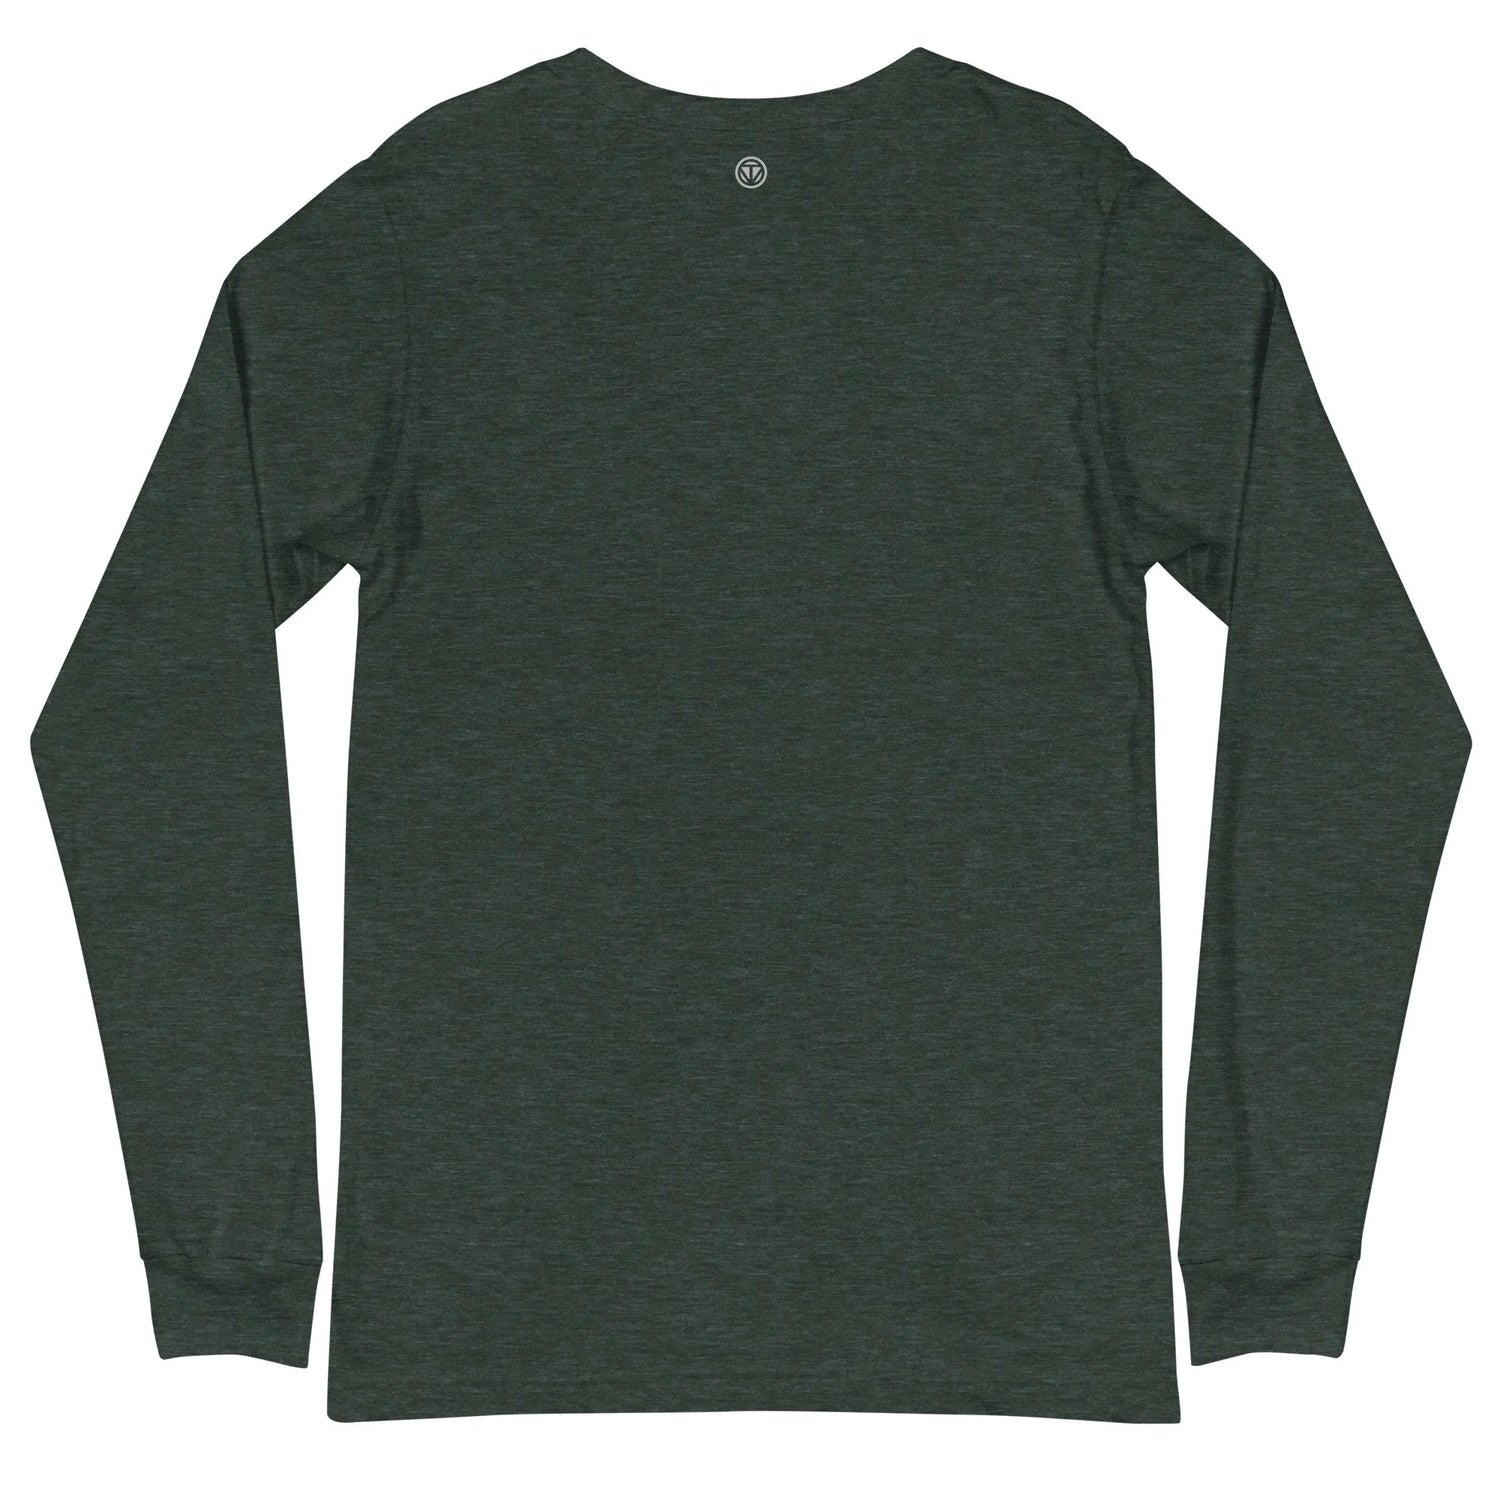 Langarm Baumwoll T-Shirt VIBES (Dunkelgrün/Weiß), Langarm T-Shirts, Time Of Vibes